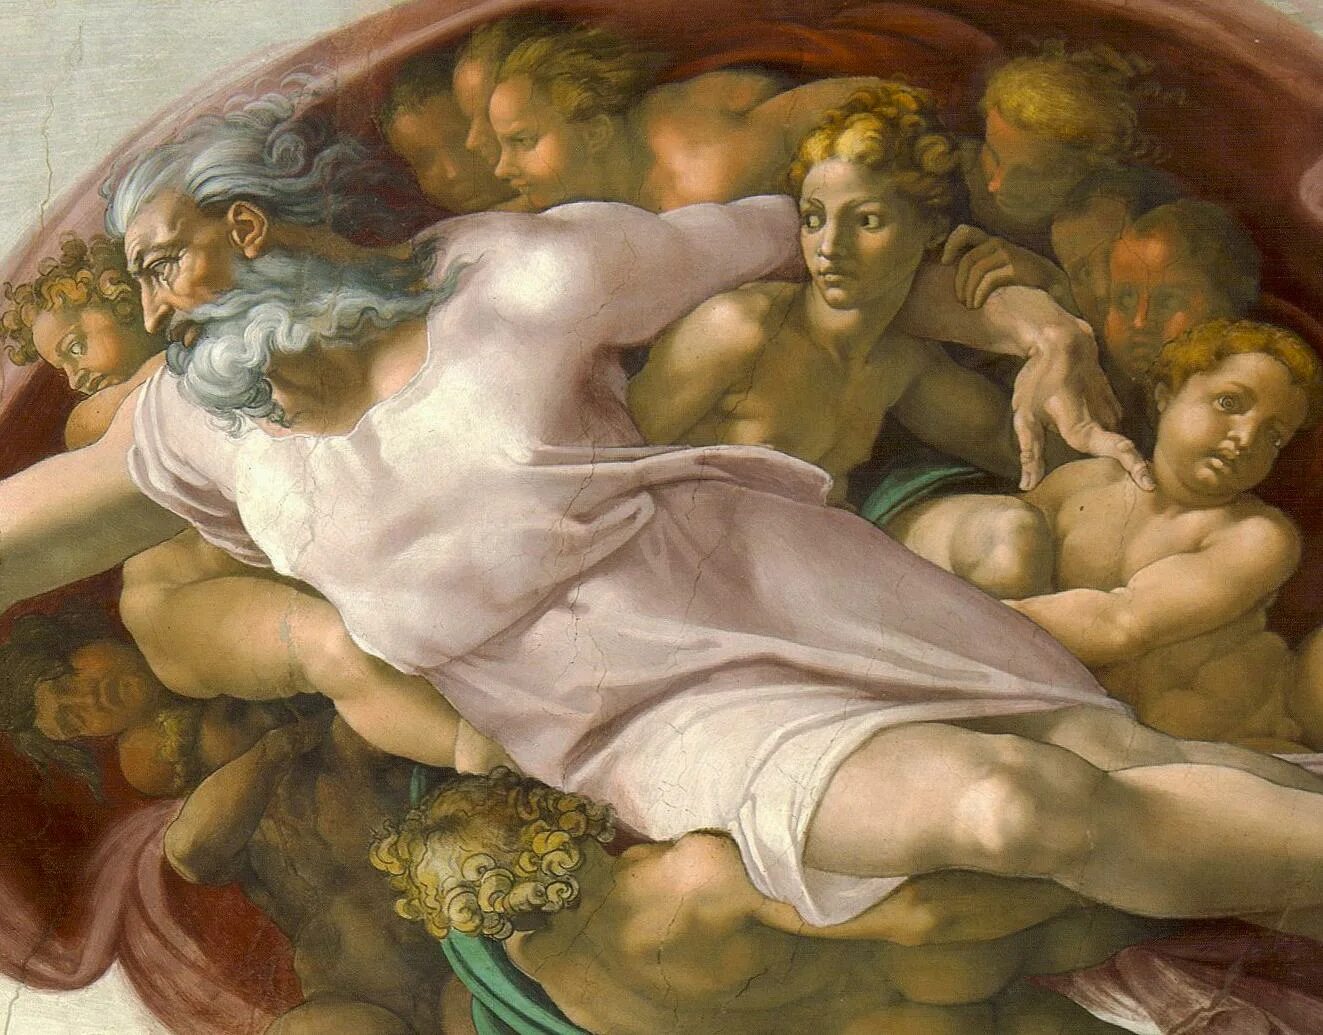 Как был создан бог. Микеланджело Сотворение Адама. Микеланджело Буонарроти картины Сотворение Адама. Микеланджело Буонарроти. «Сотворение Адама» (1511).